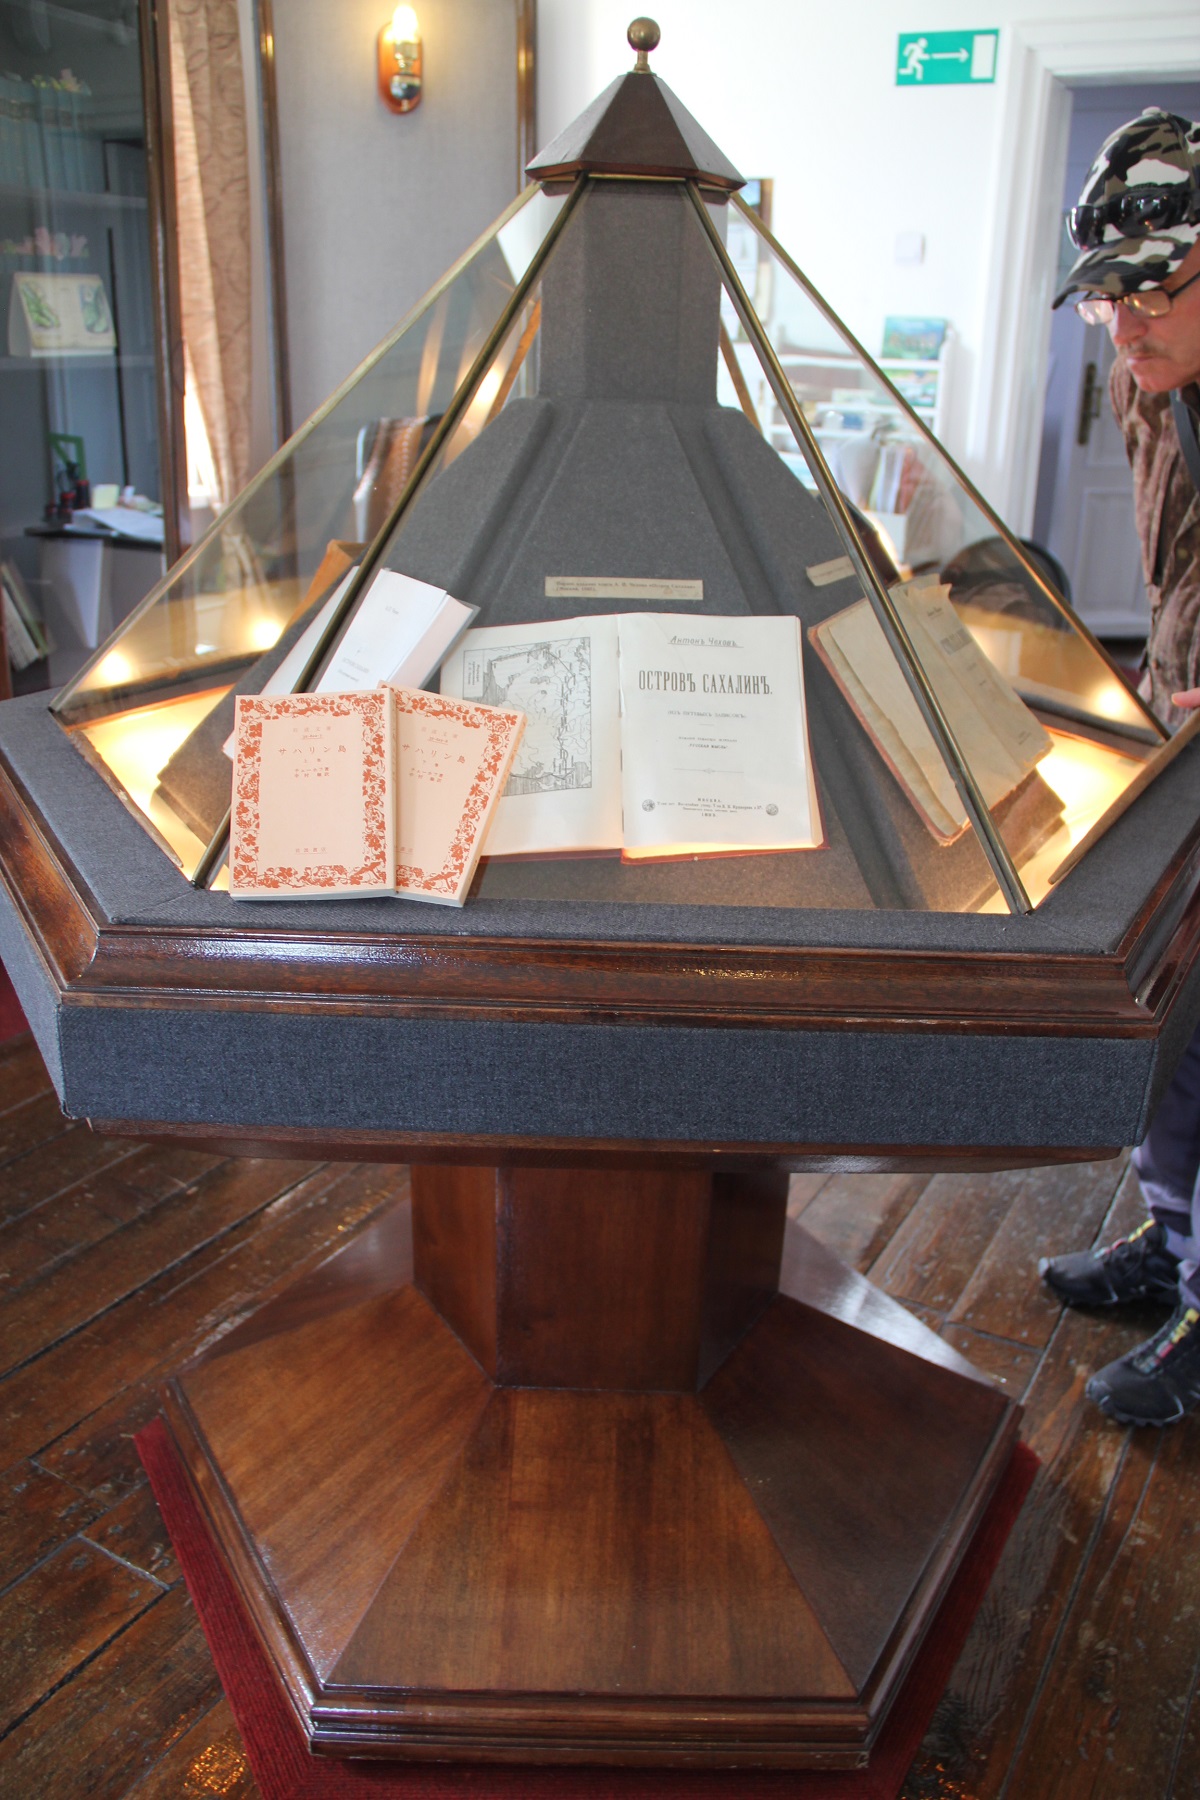 「歴史・文学博物館　チェーホフとサハリン」に展示された『サハリン島』初版と持参した岩波文庫版